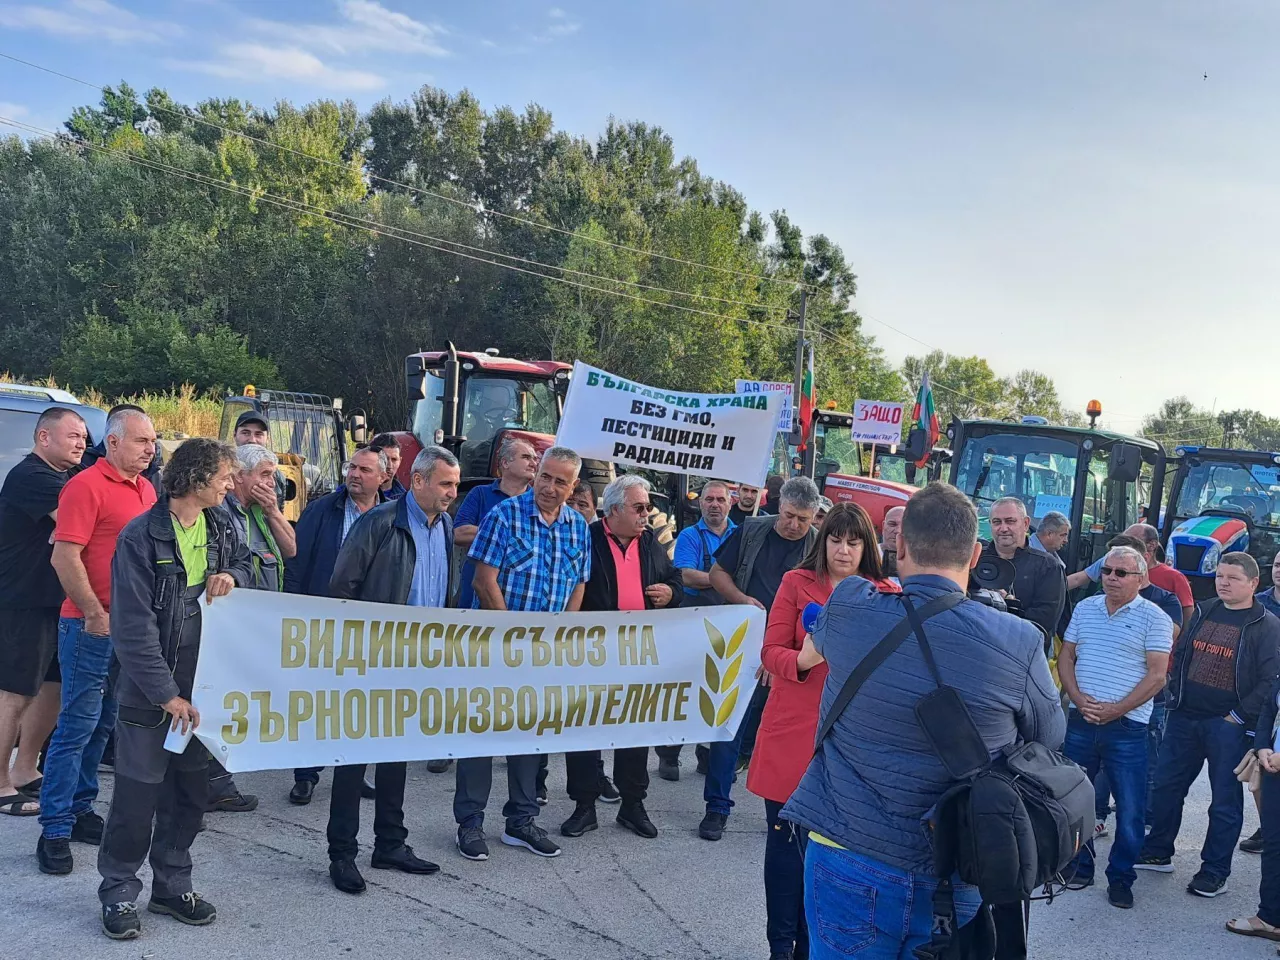 &lt;p&gt;Bułgarscy rolnicy blokują autostrady i przejścia graniczne. Wielkie protesty przeciwko importowi zboża z Ukrainy&lt;/p&gt;